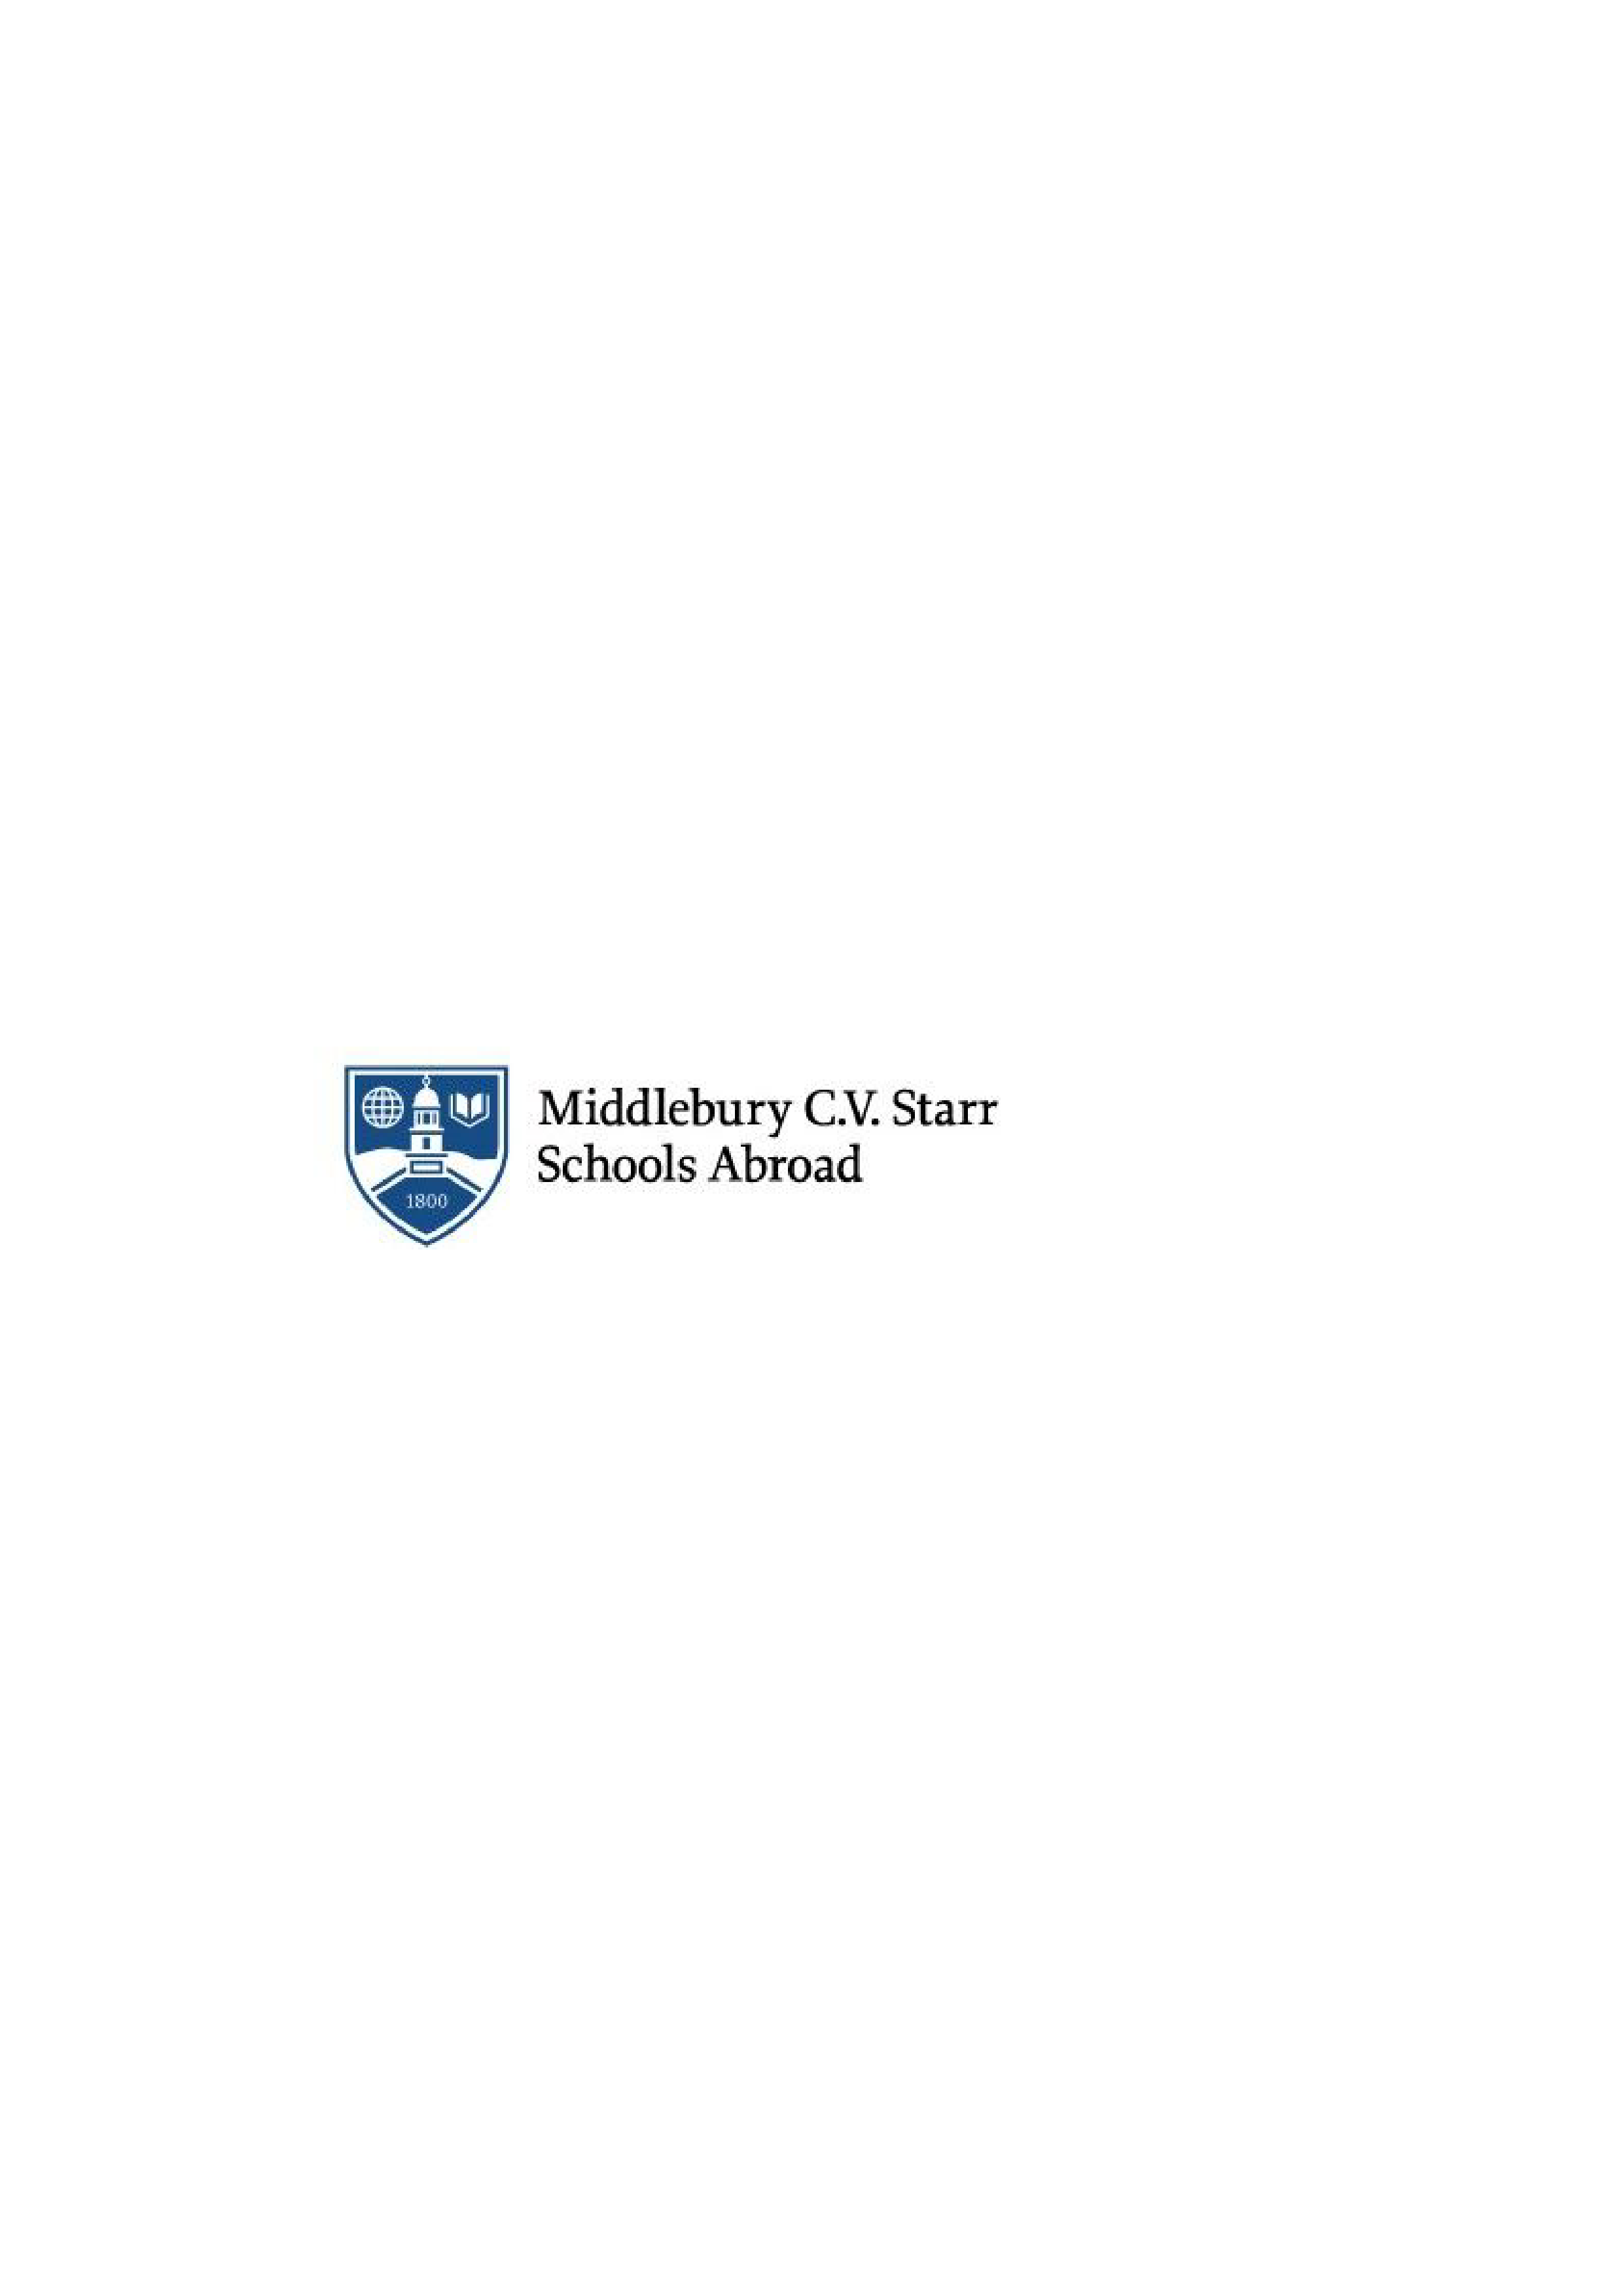 Tutor_innen zur sprachlich-akademischen Betreuung internationaler Studierender gesucht - Middlebury CV Starr School in Germany - Logo